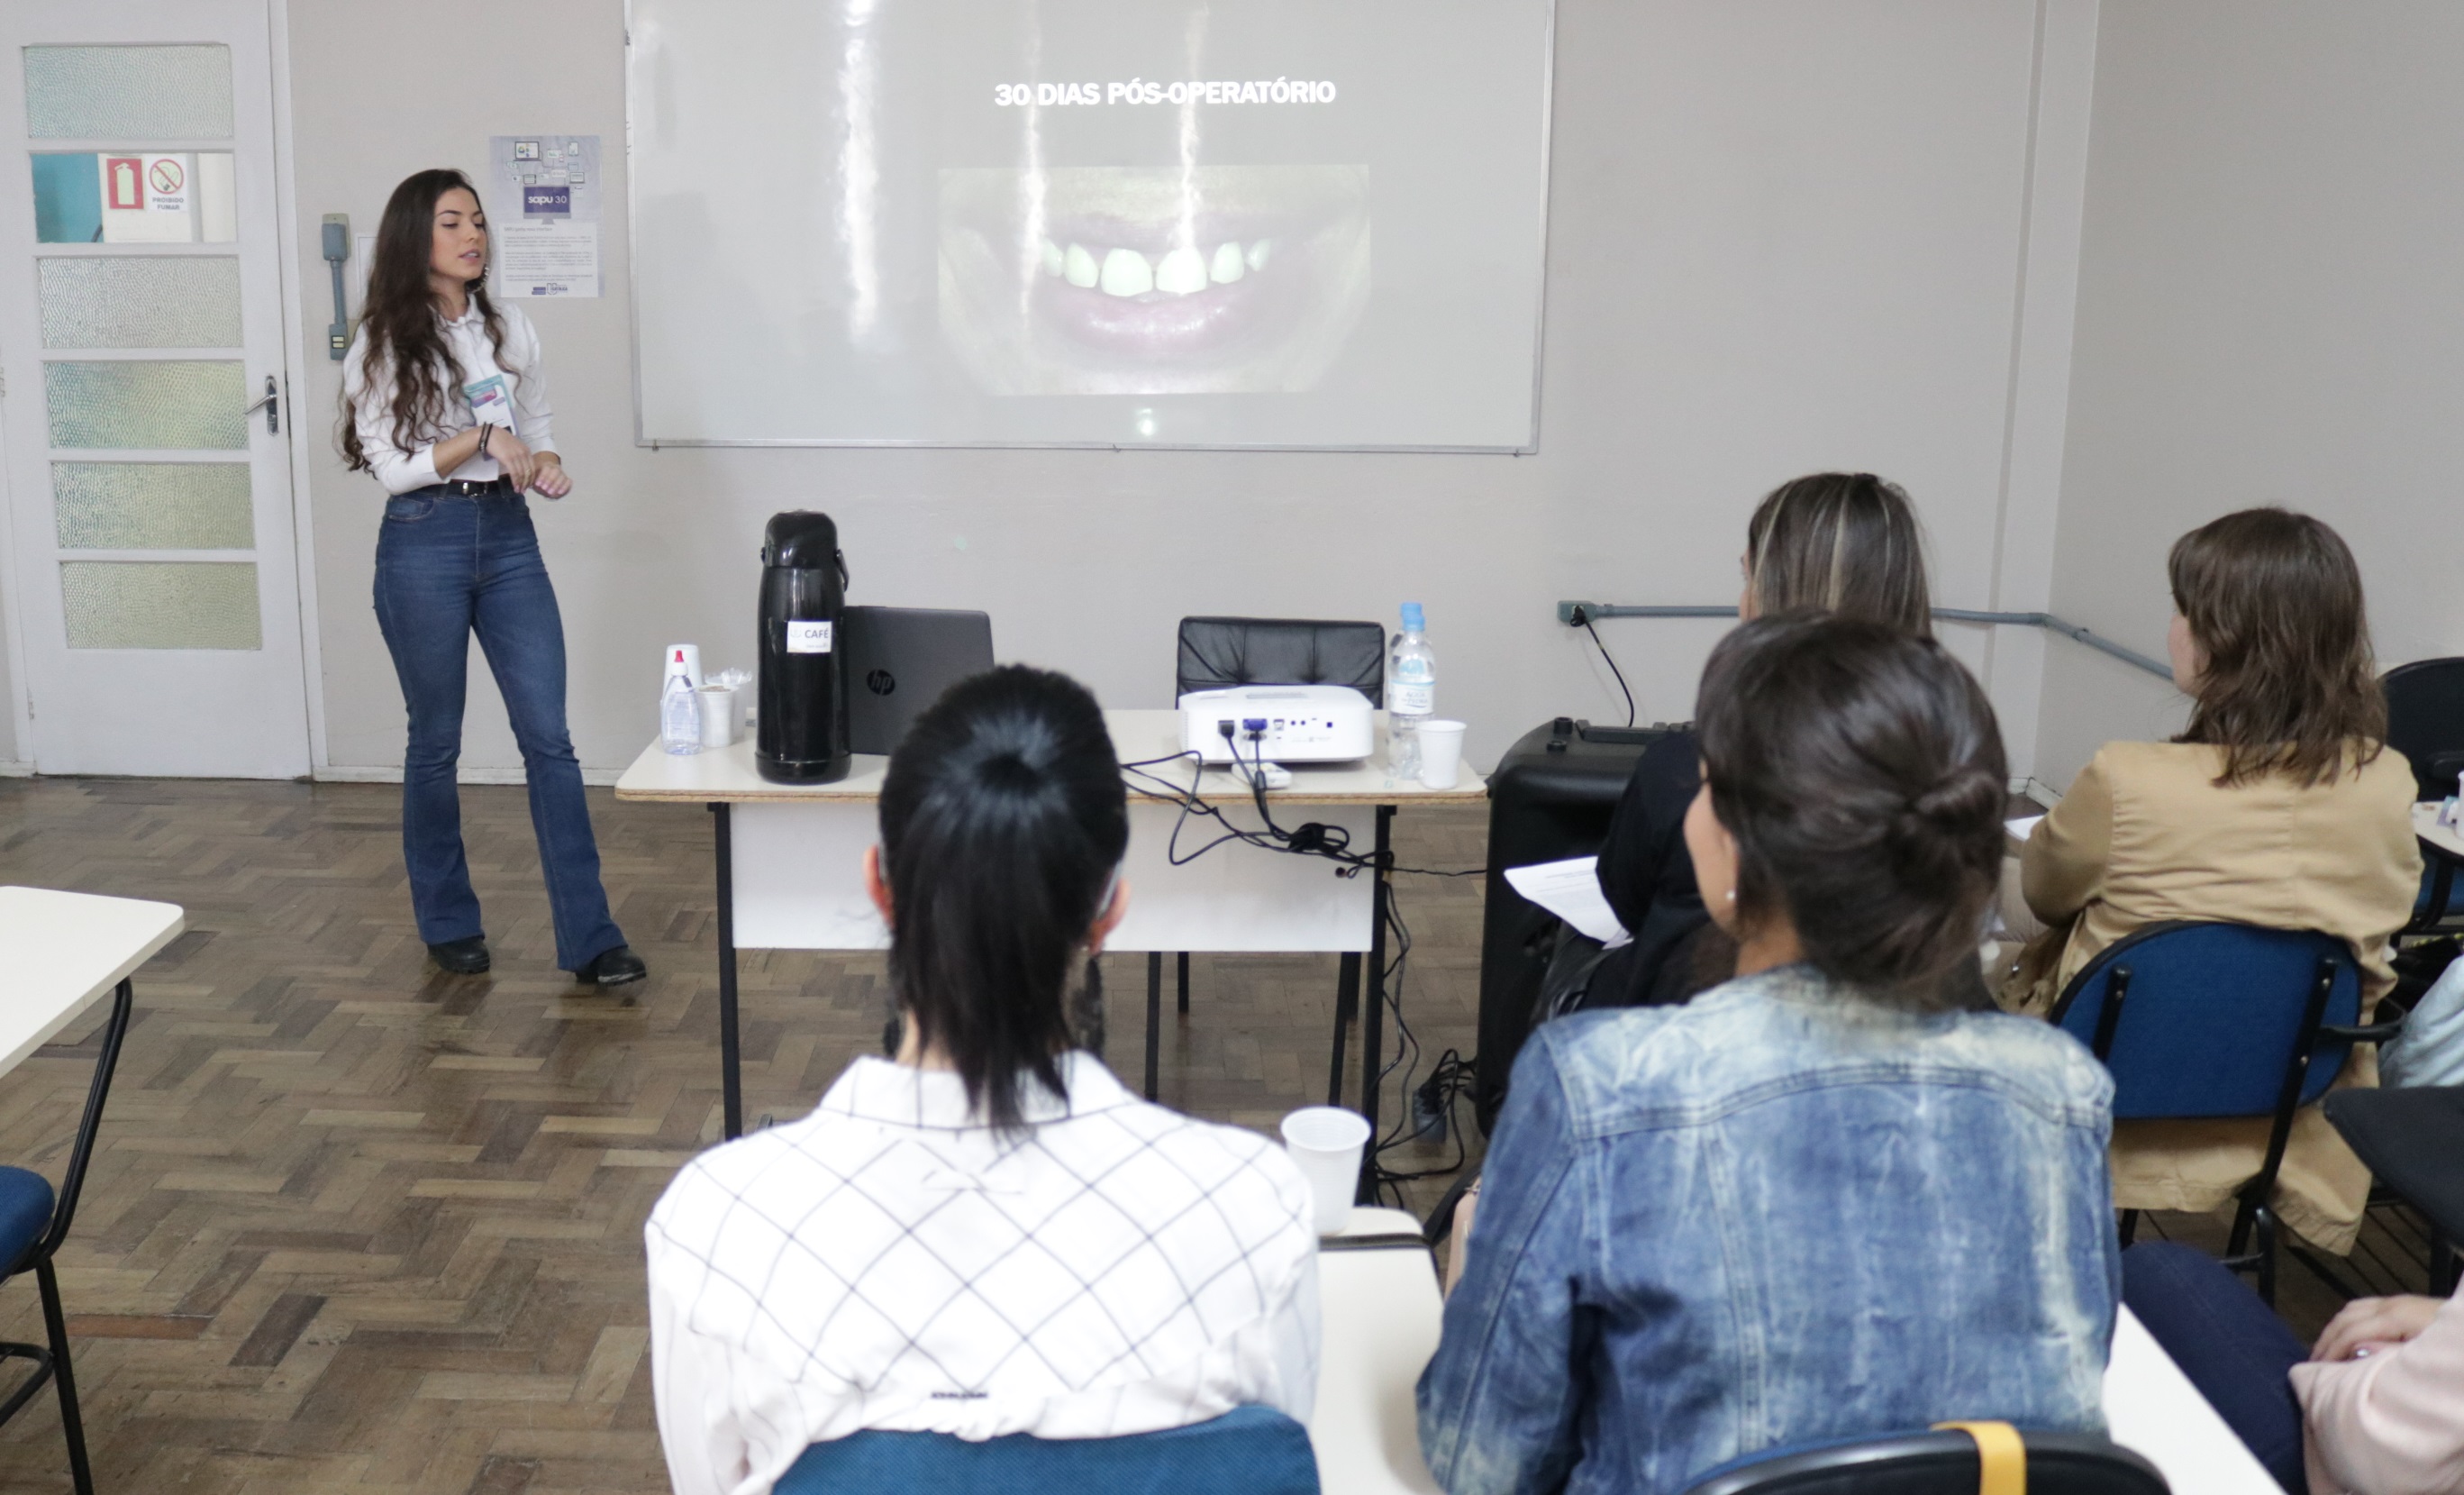 aluna do curso de odontologia apresentando trabalho no salão universitário 2019